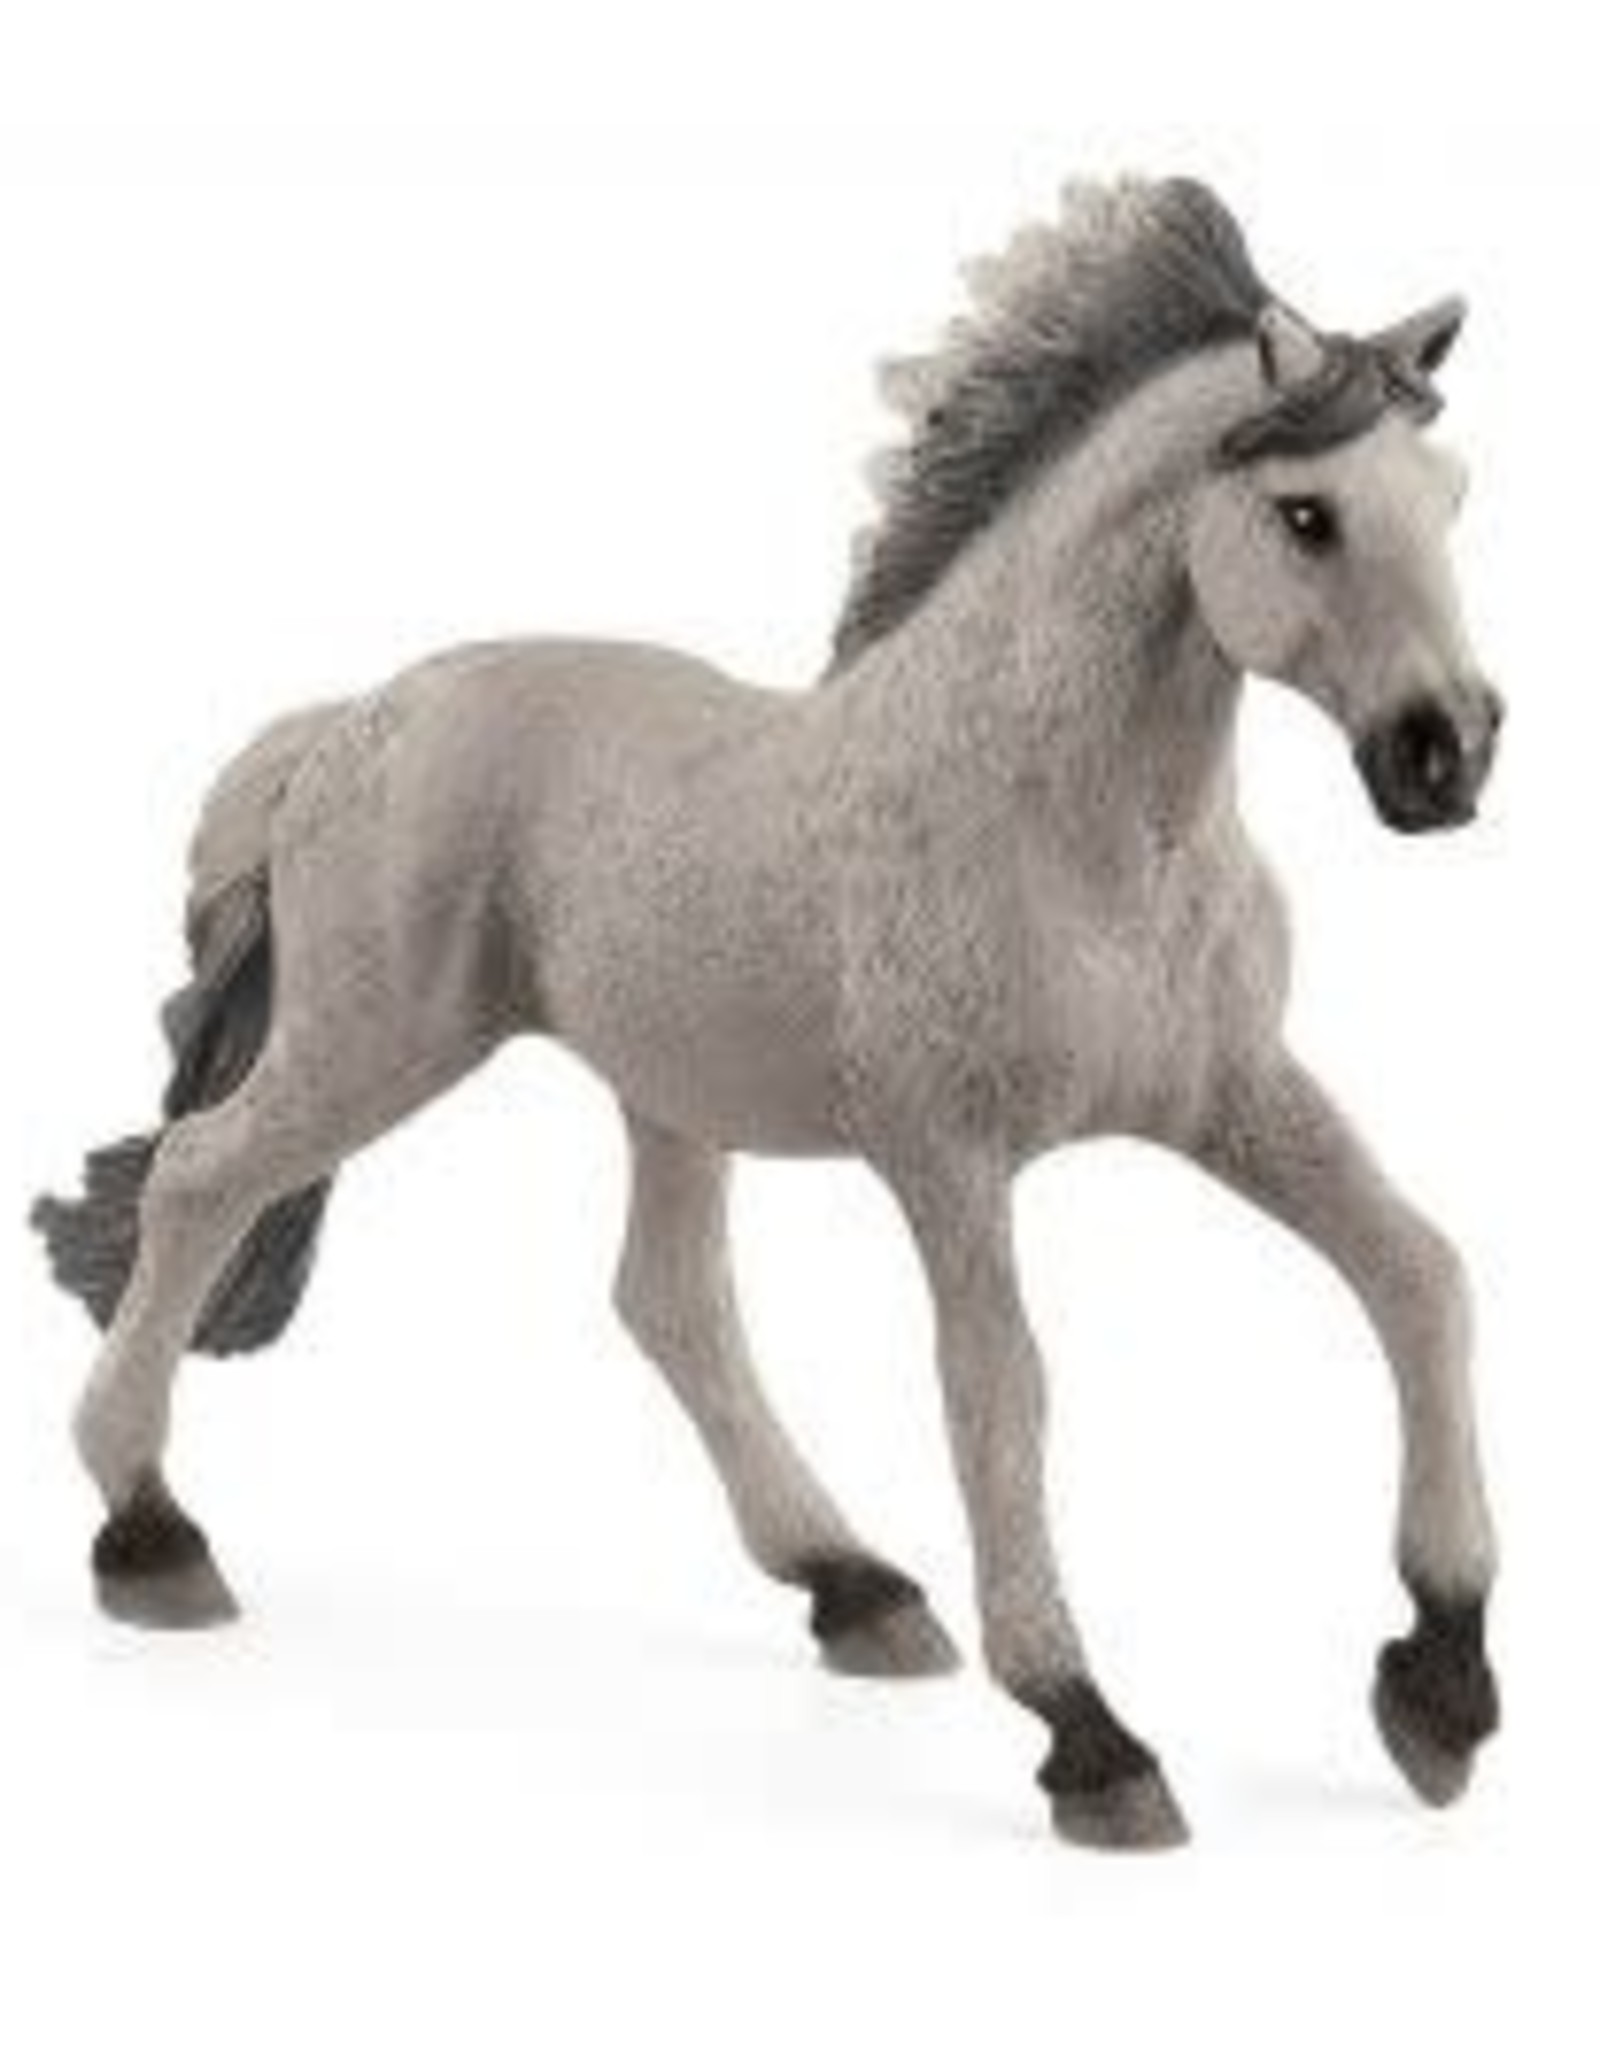 Schleich Sorraia Mustang Stallion 13915